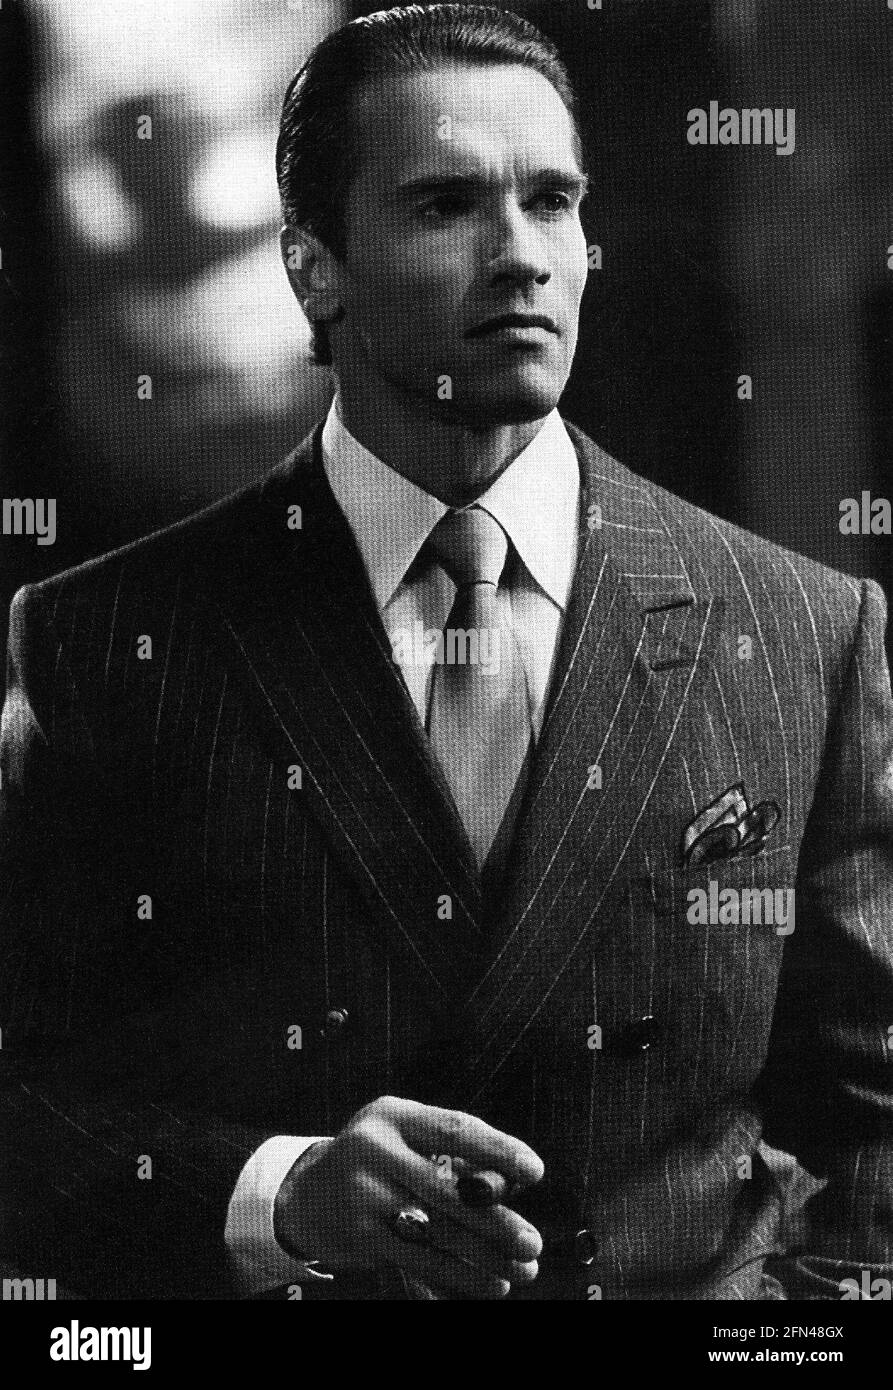 Schwarzenegger, Arnold, * 30.7.1947, österreichischer Schauspieler, halbe Länge, ADDITIONAL-RIGHTS-CLEARANCE-INFO-NOT-AVAILABLE Stockfoto